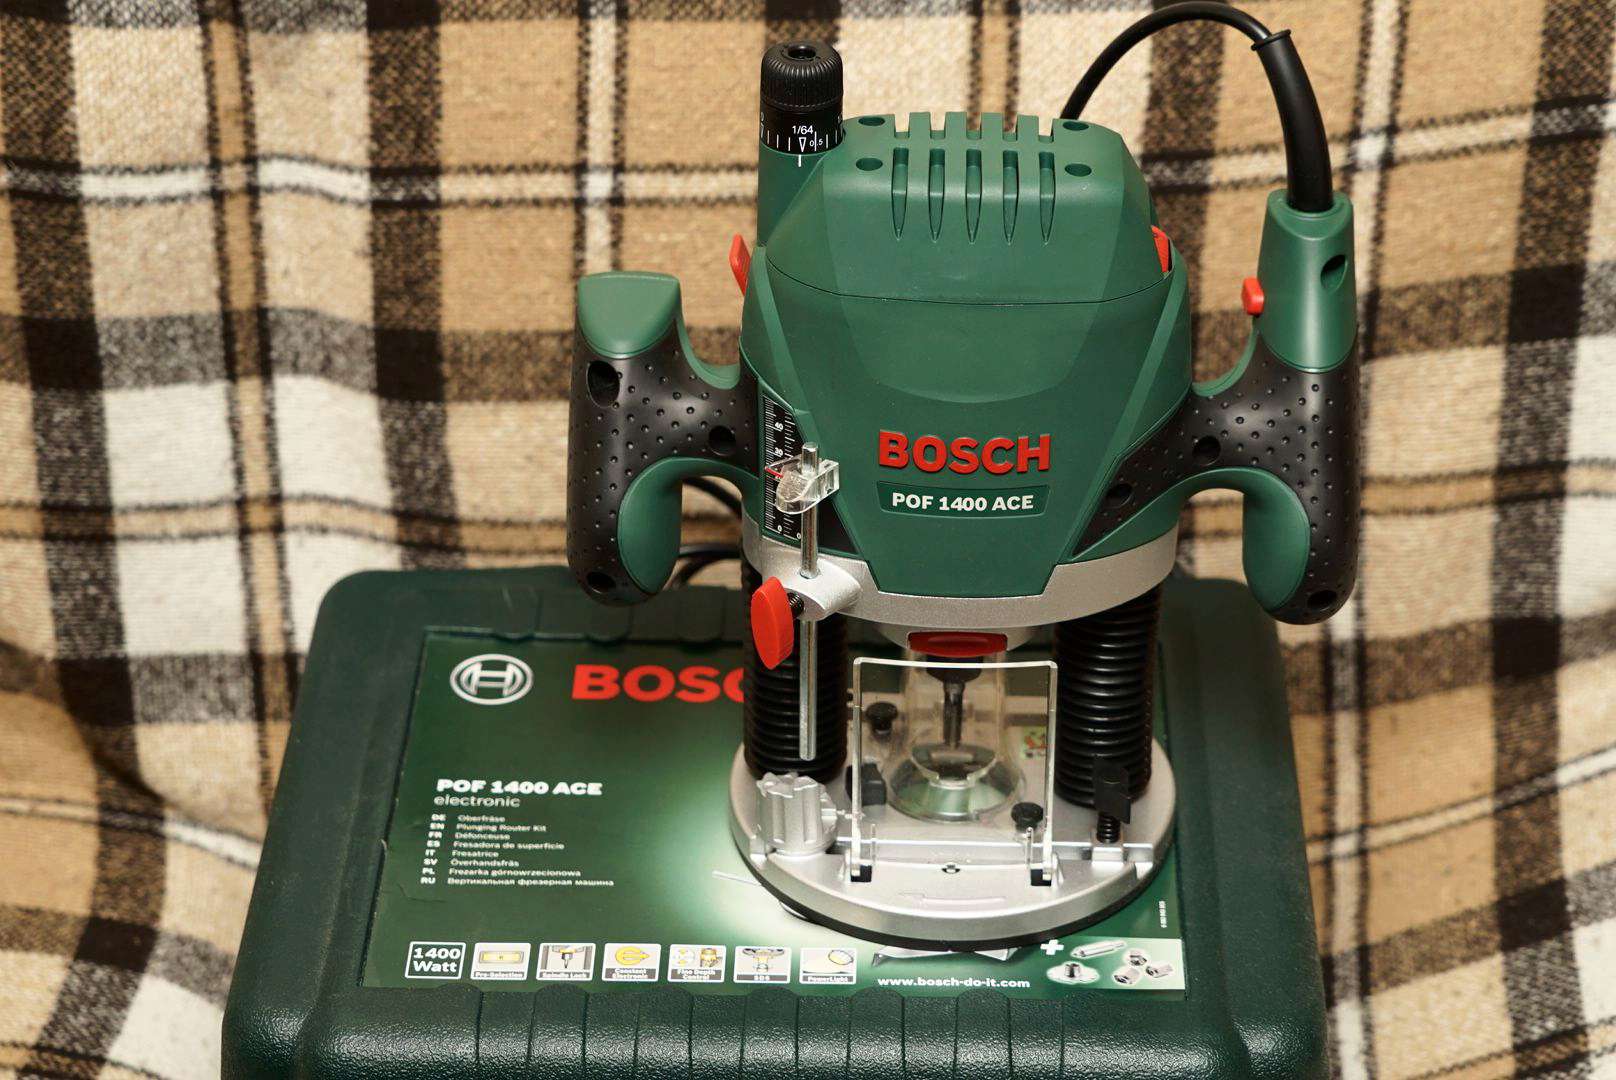 Bosch POF 1400 Ace